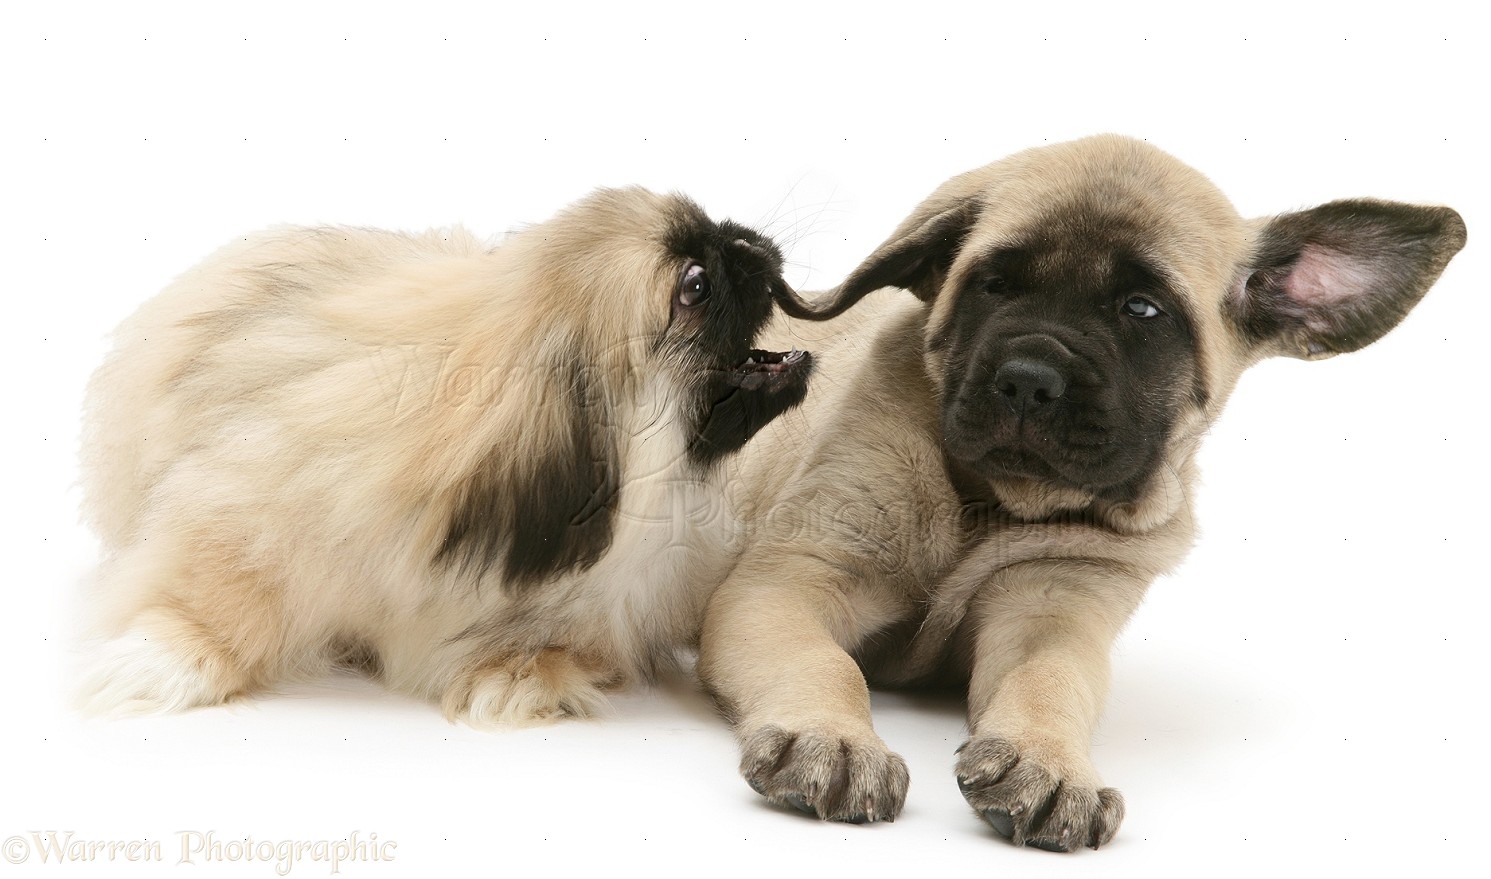 Dogs Pekingese pup biting ear of English Mastiff pup photo   WP14853